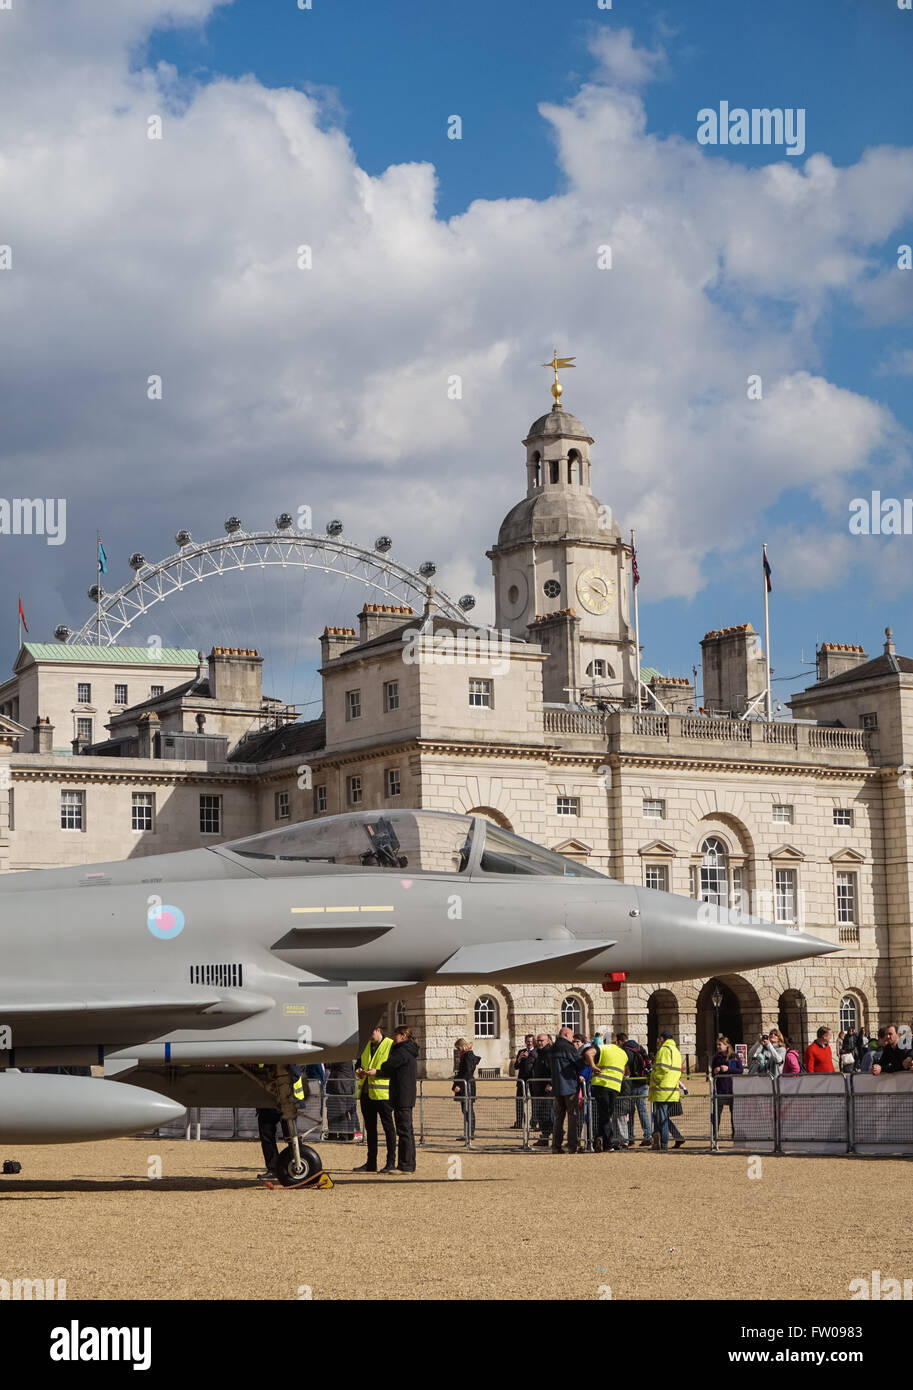 Full-size replica di un Eurofighter Typhoon esposto presso la sfilata delle Guardie a Cavallo a Londra in occasione del centenario del RAF, Londra England Regno Unito Regno Unito Foto Stock